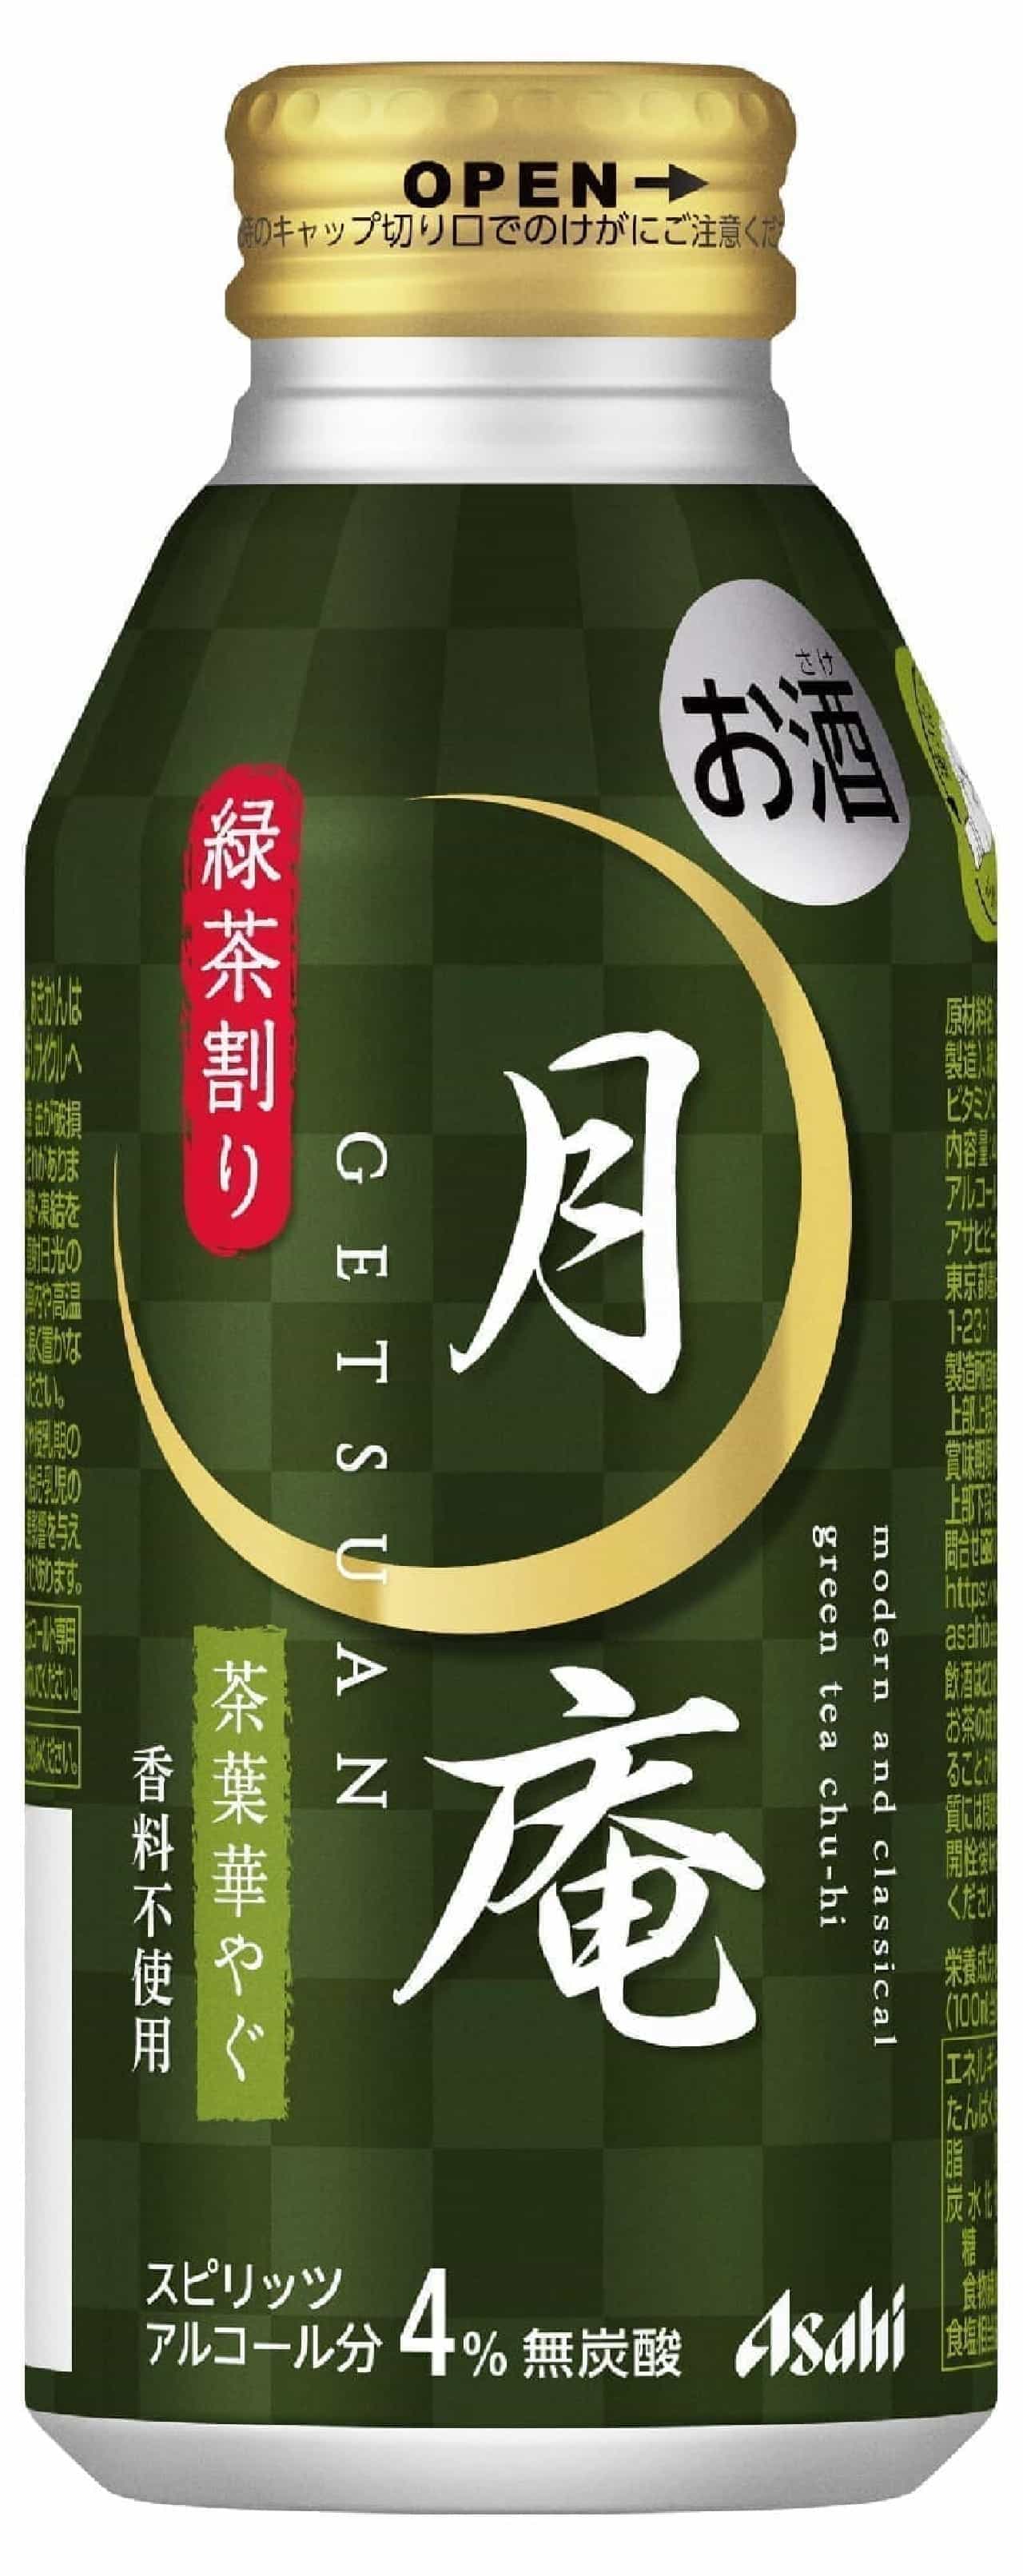 「アサヒ月庵 緑茶割り」緑茶のボトル缶チューハイ